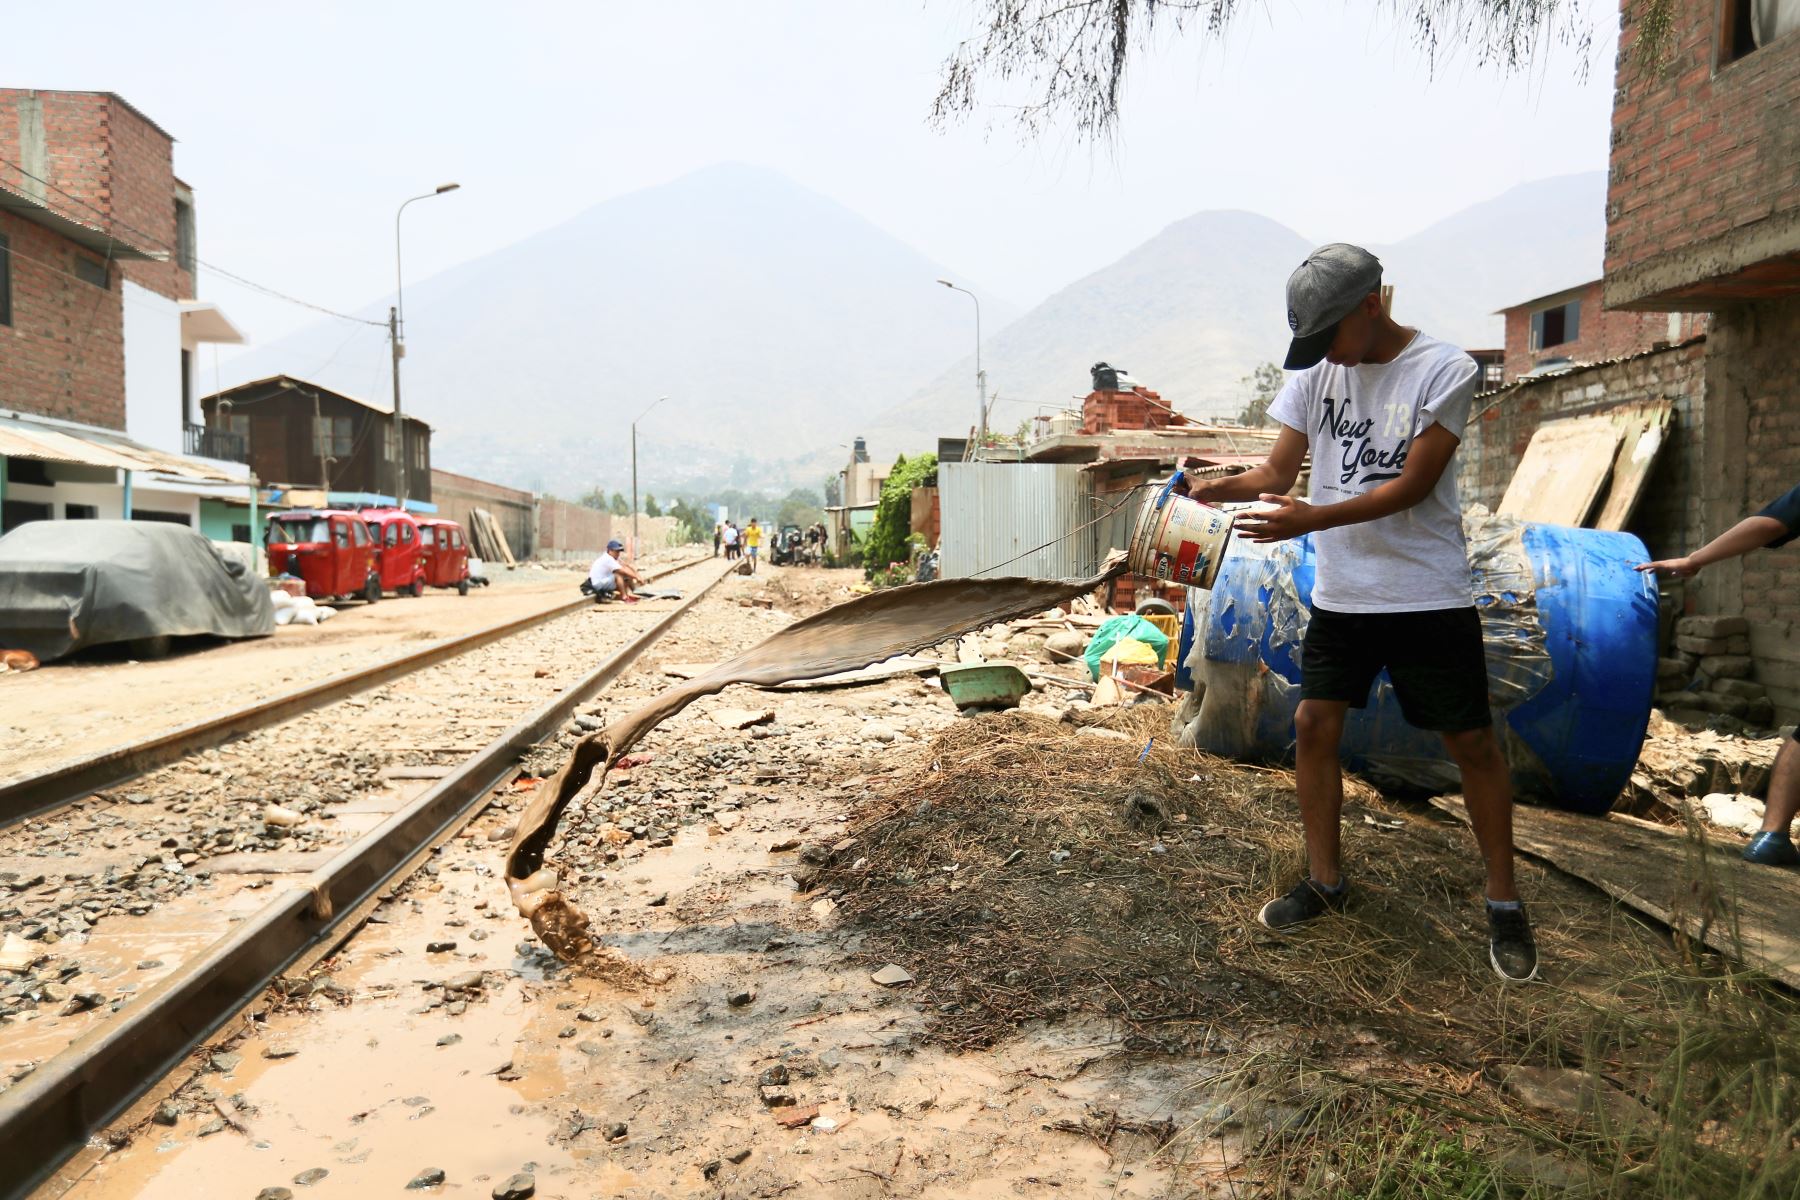 Los vecinos afectados, que serían unas 150 familias según la municipalidad, siguen limpiando hoy dentro y fuera de sus viviendas con ayuda de las autoridades locales. Foto: ANDINA/Ricardo Cuba